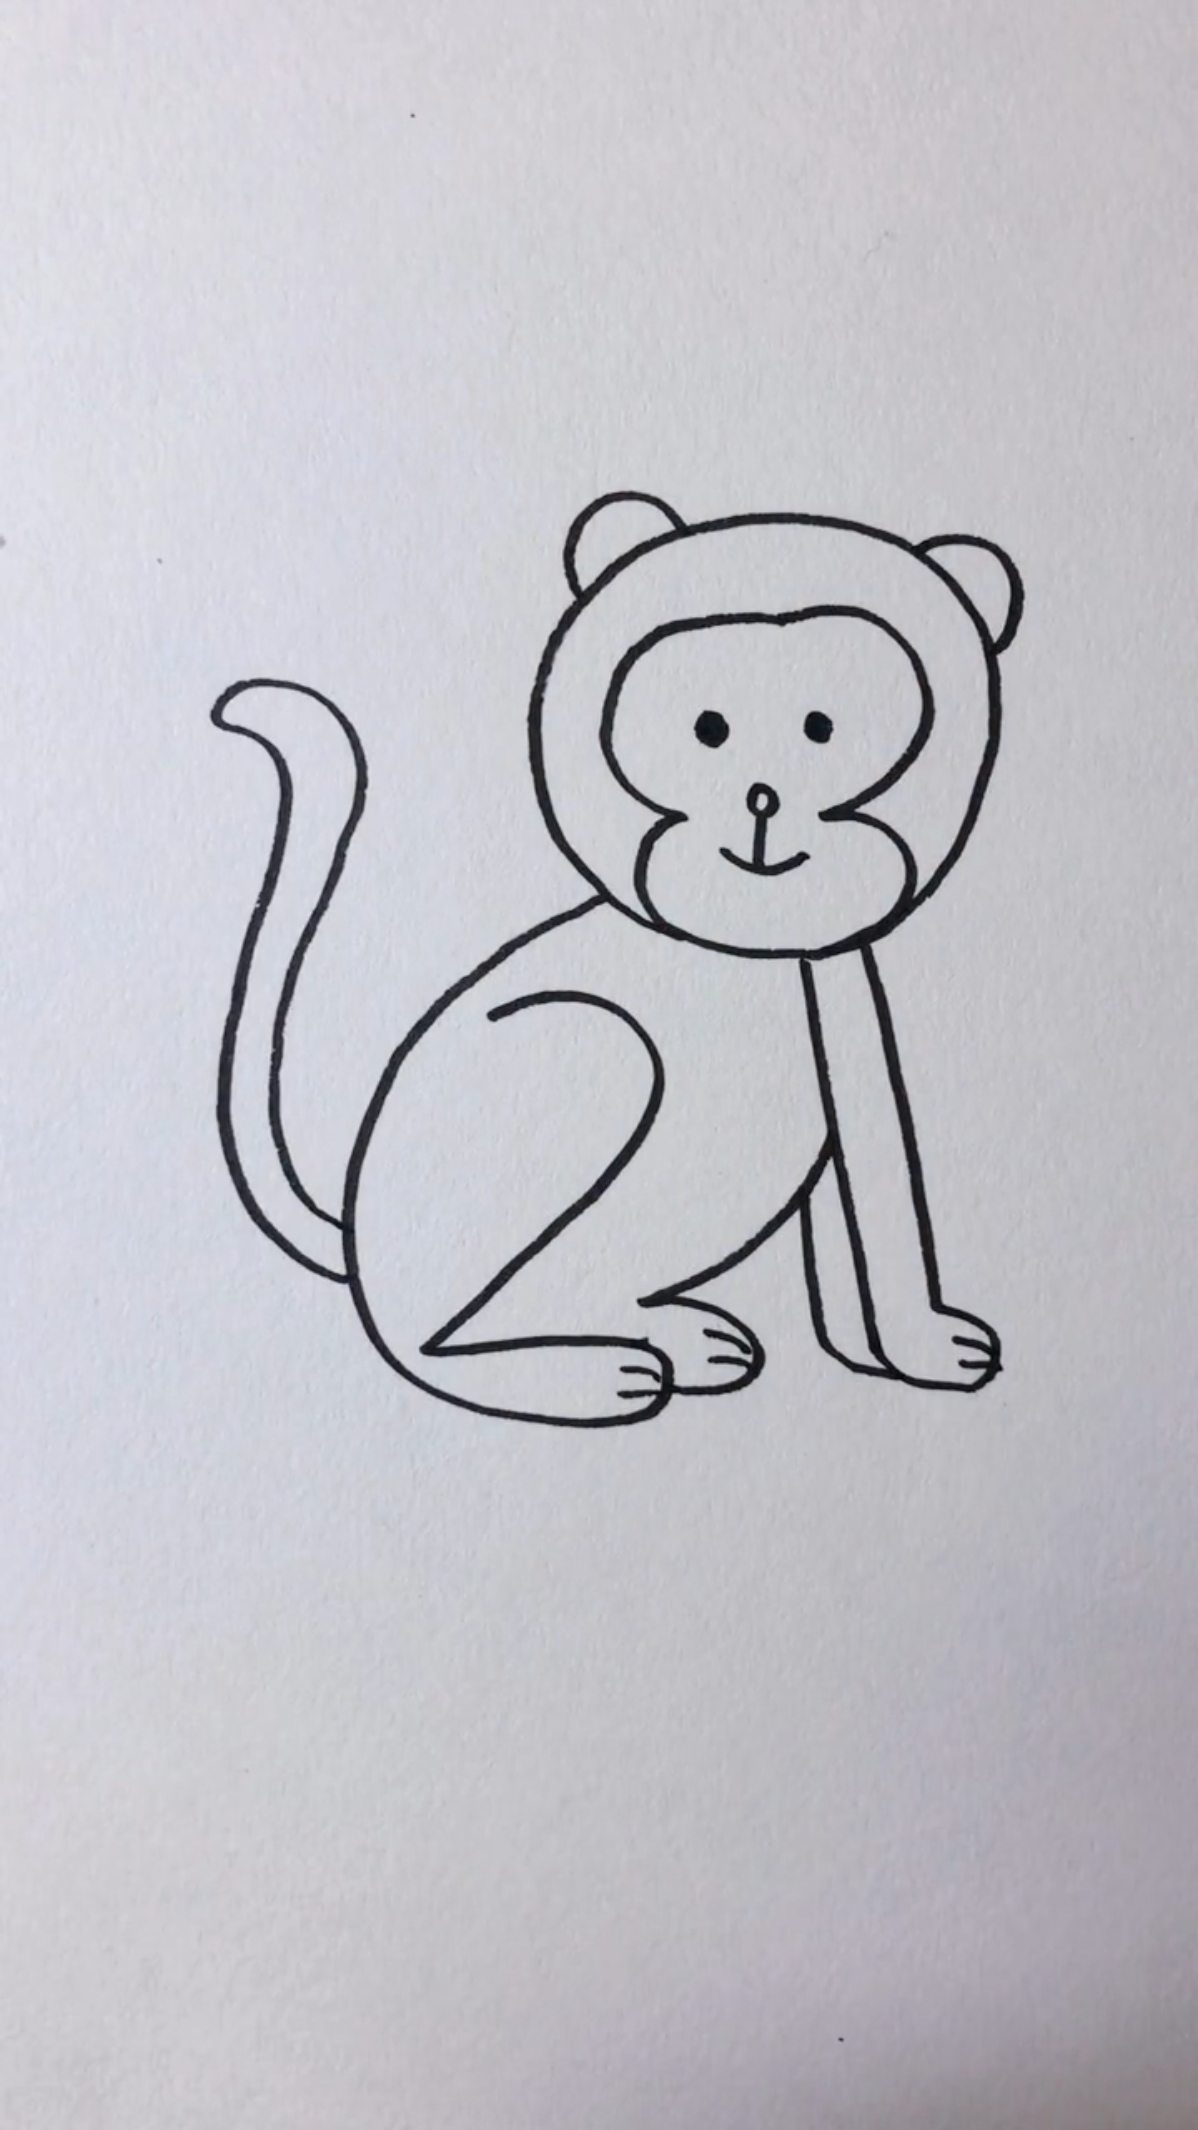 用数字画猴子的简笔画图片